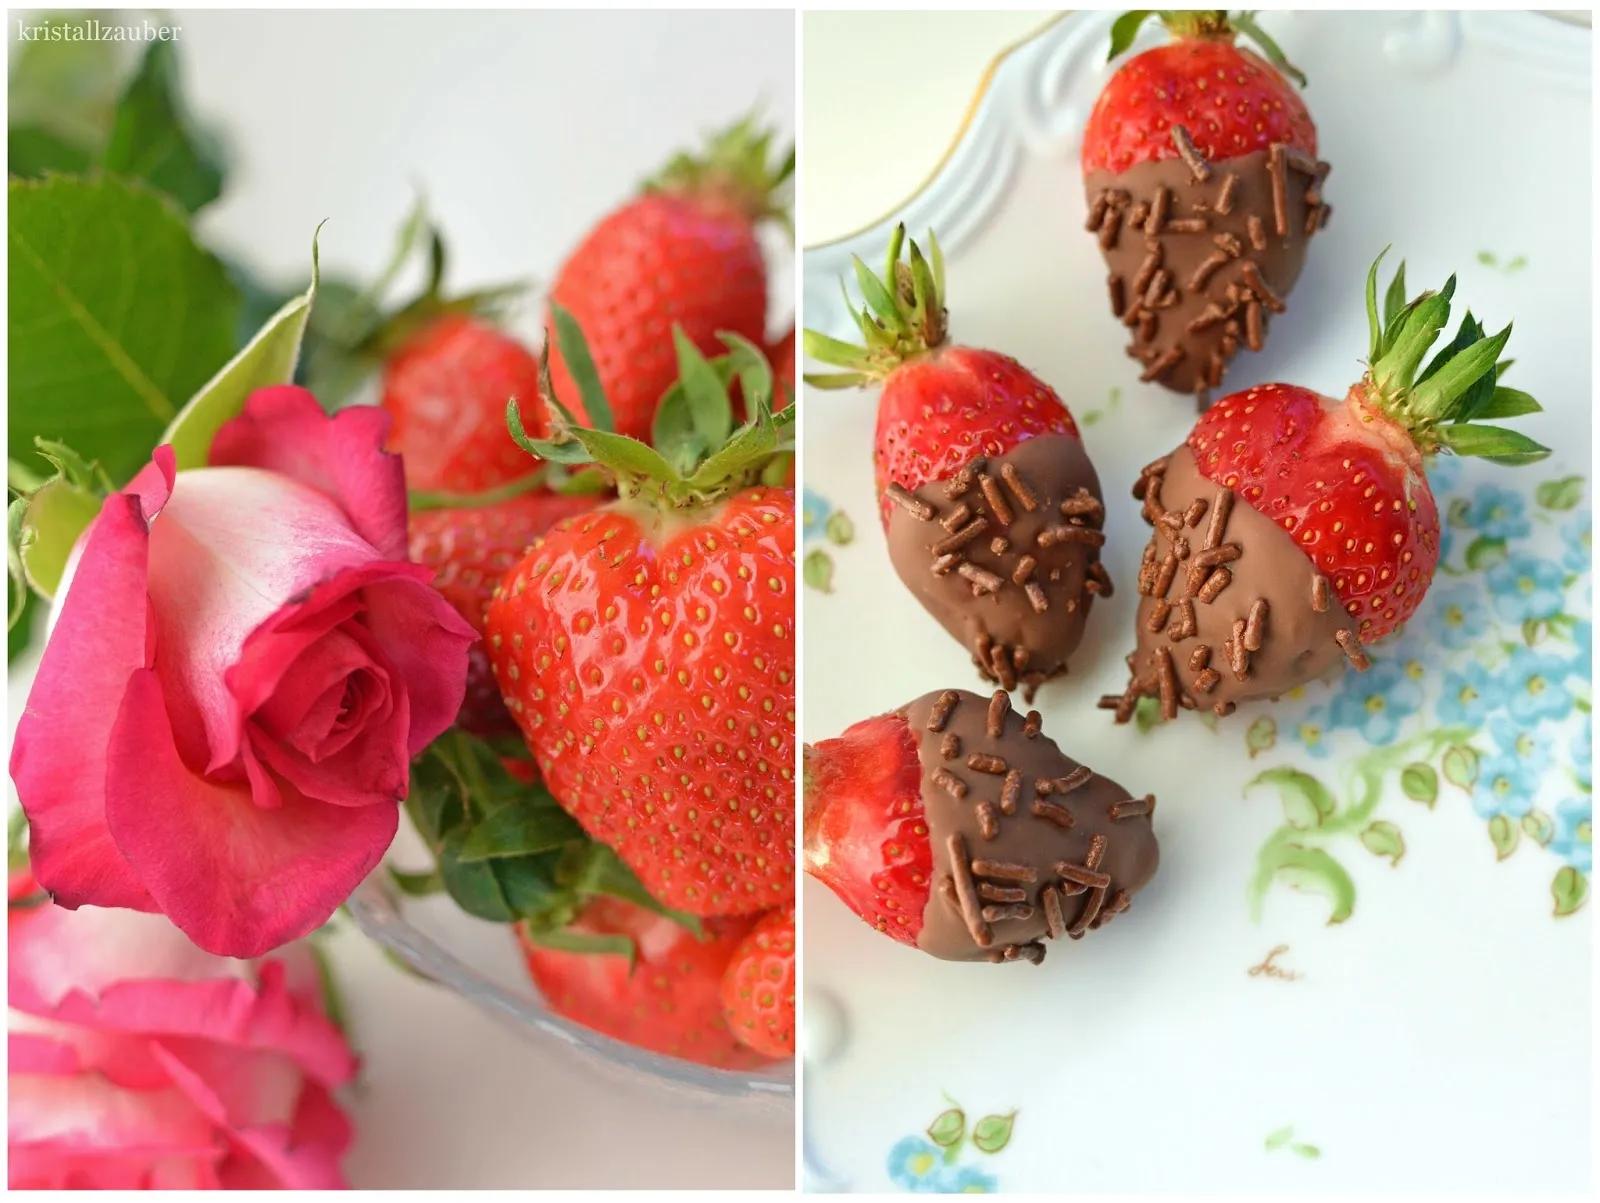 Kristallzauber: {Rezept} Erdbeeren mit Schokolade und Streuseln